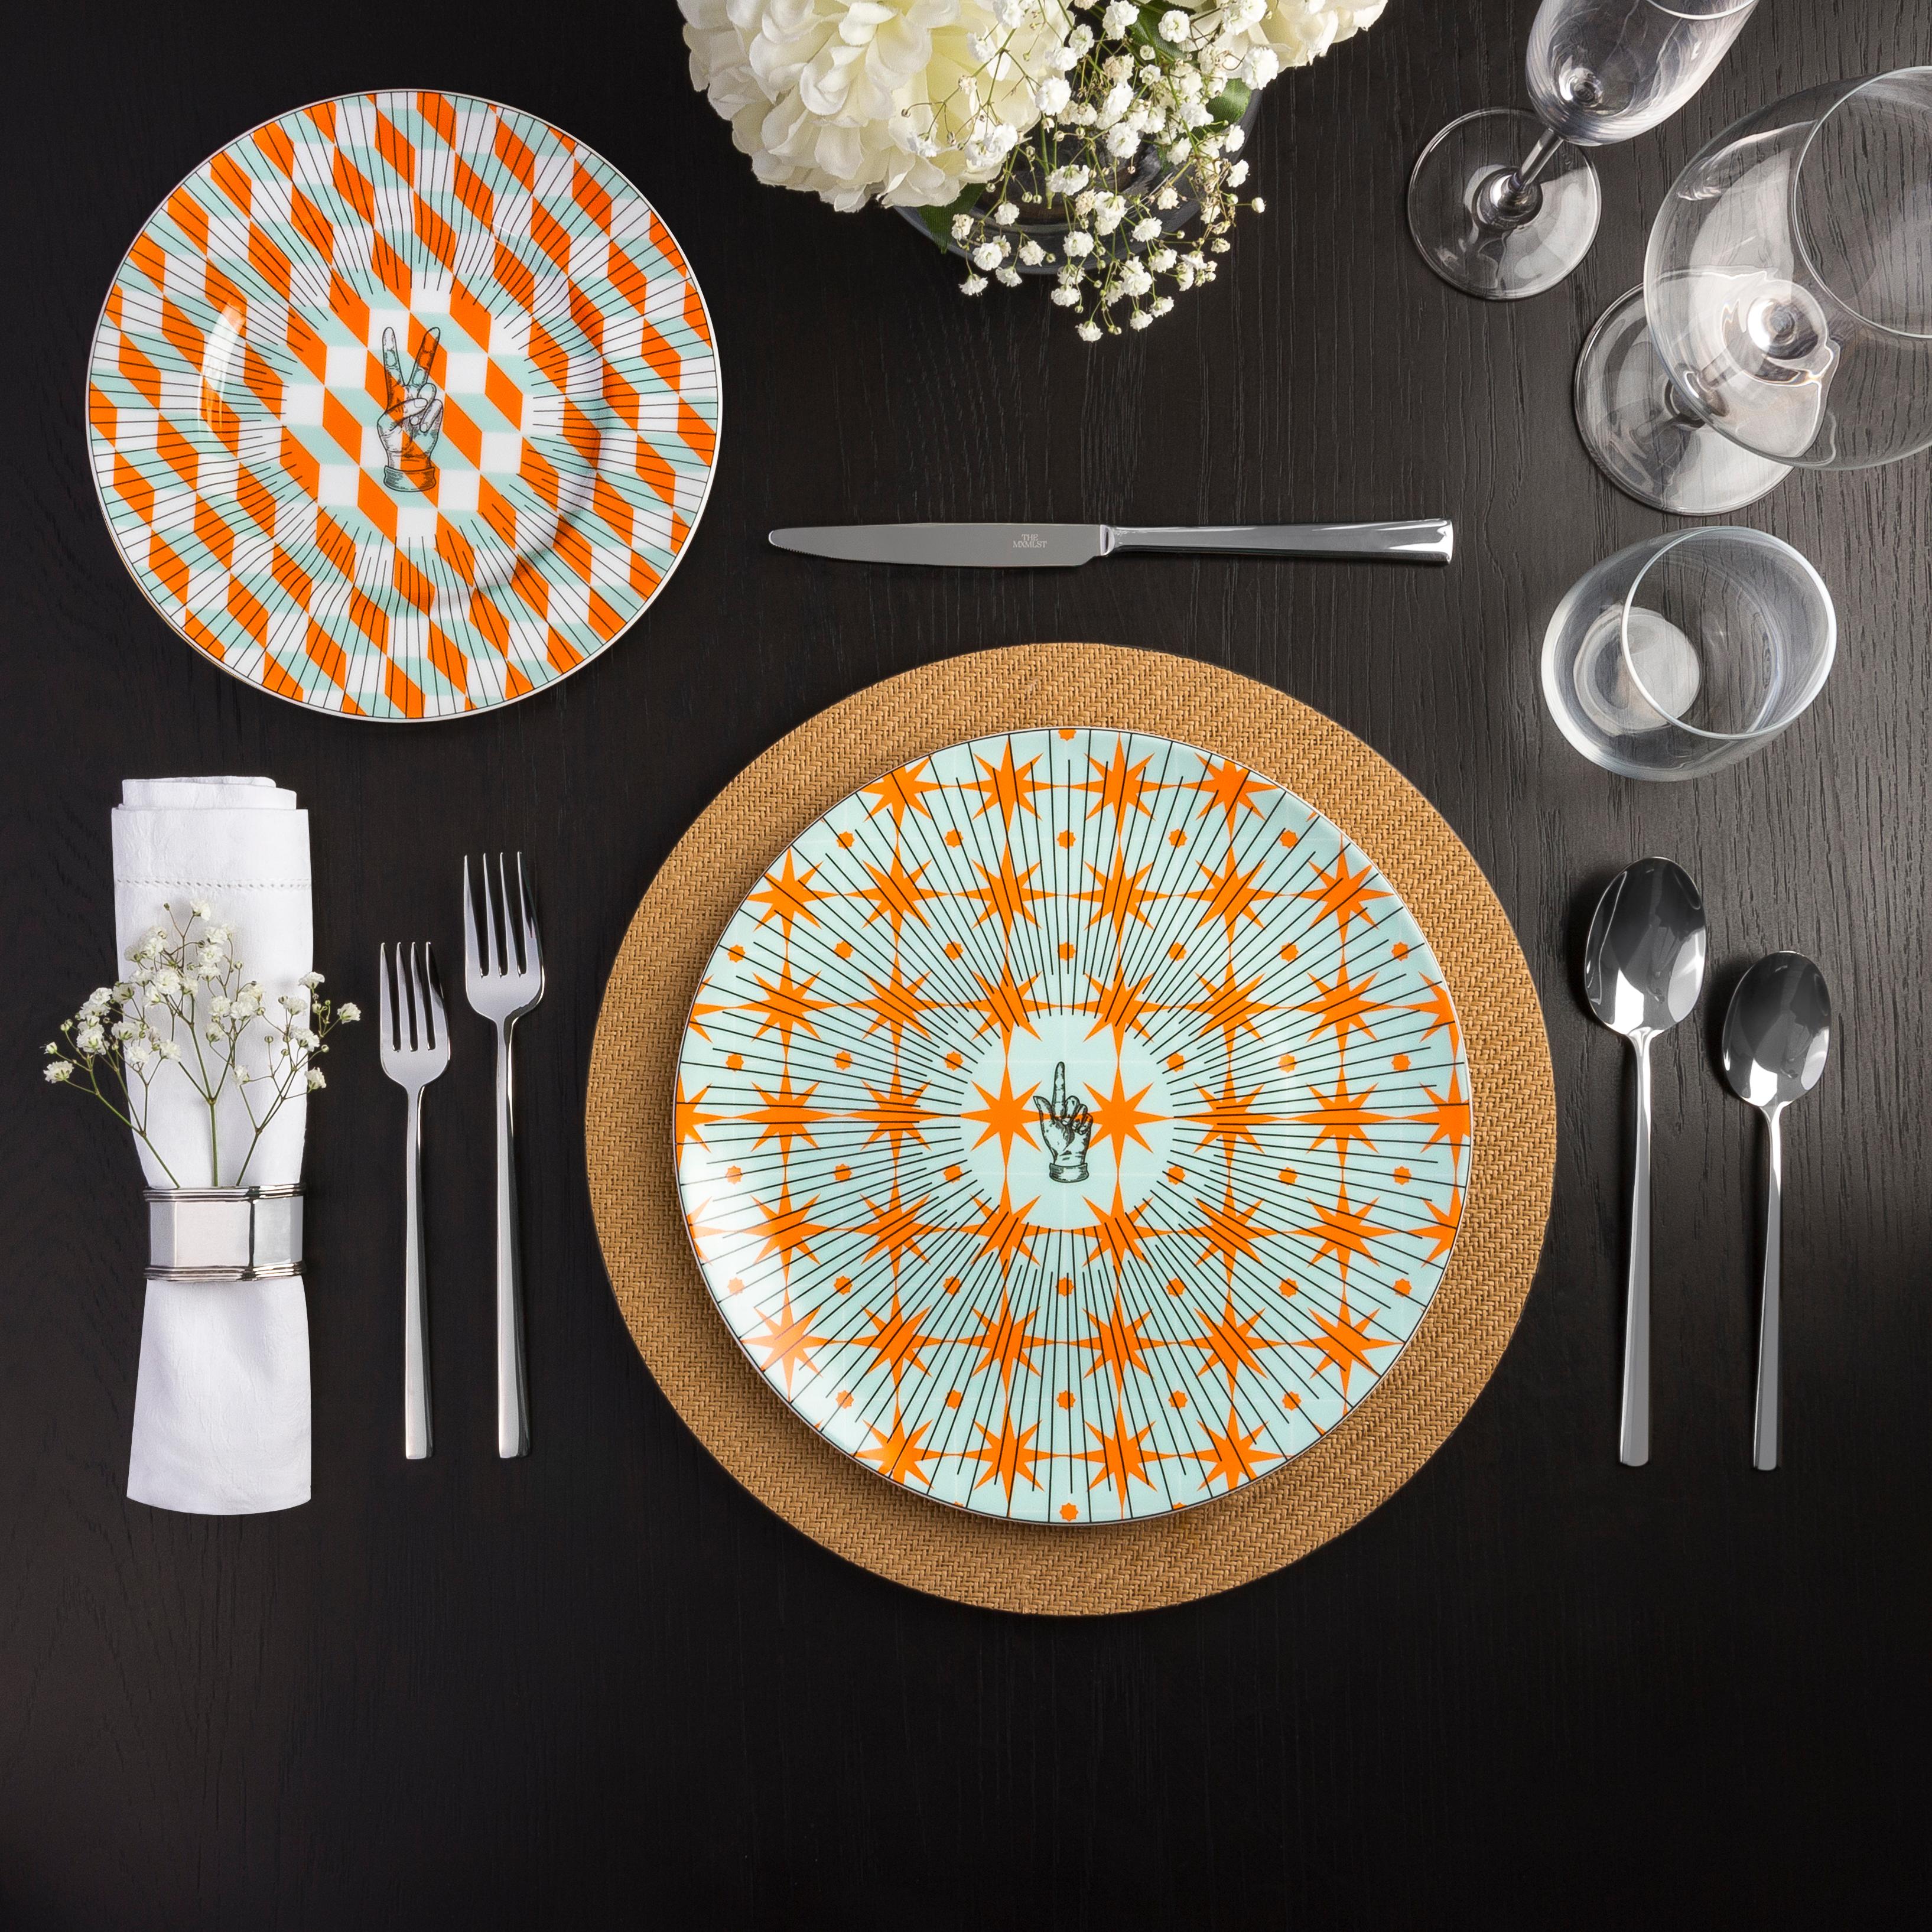 Inspiré par les motifs géométriques des carreaux portugais, le Les Clément Dinner ajoutera une touche de fraîcheur à votre table. Les lignes noires dynamiques qui mènent aux motifs des mains apportent un sens du jeu qui ne manquera pas d'illuminer